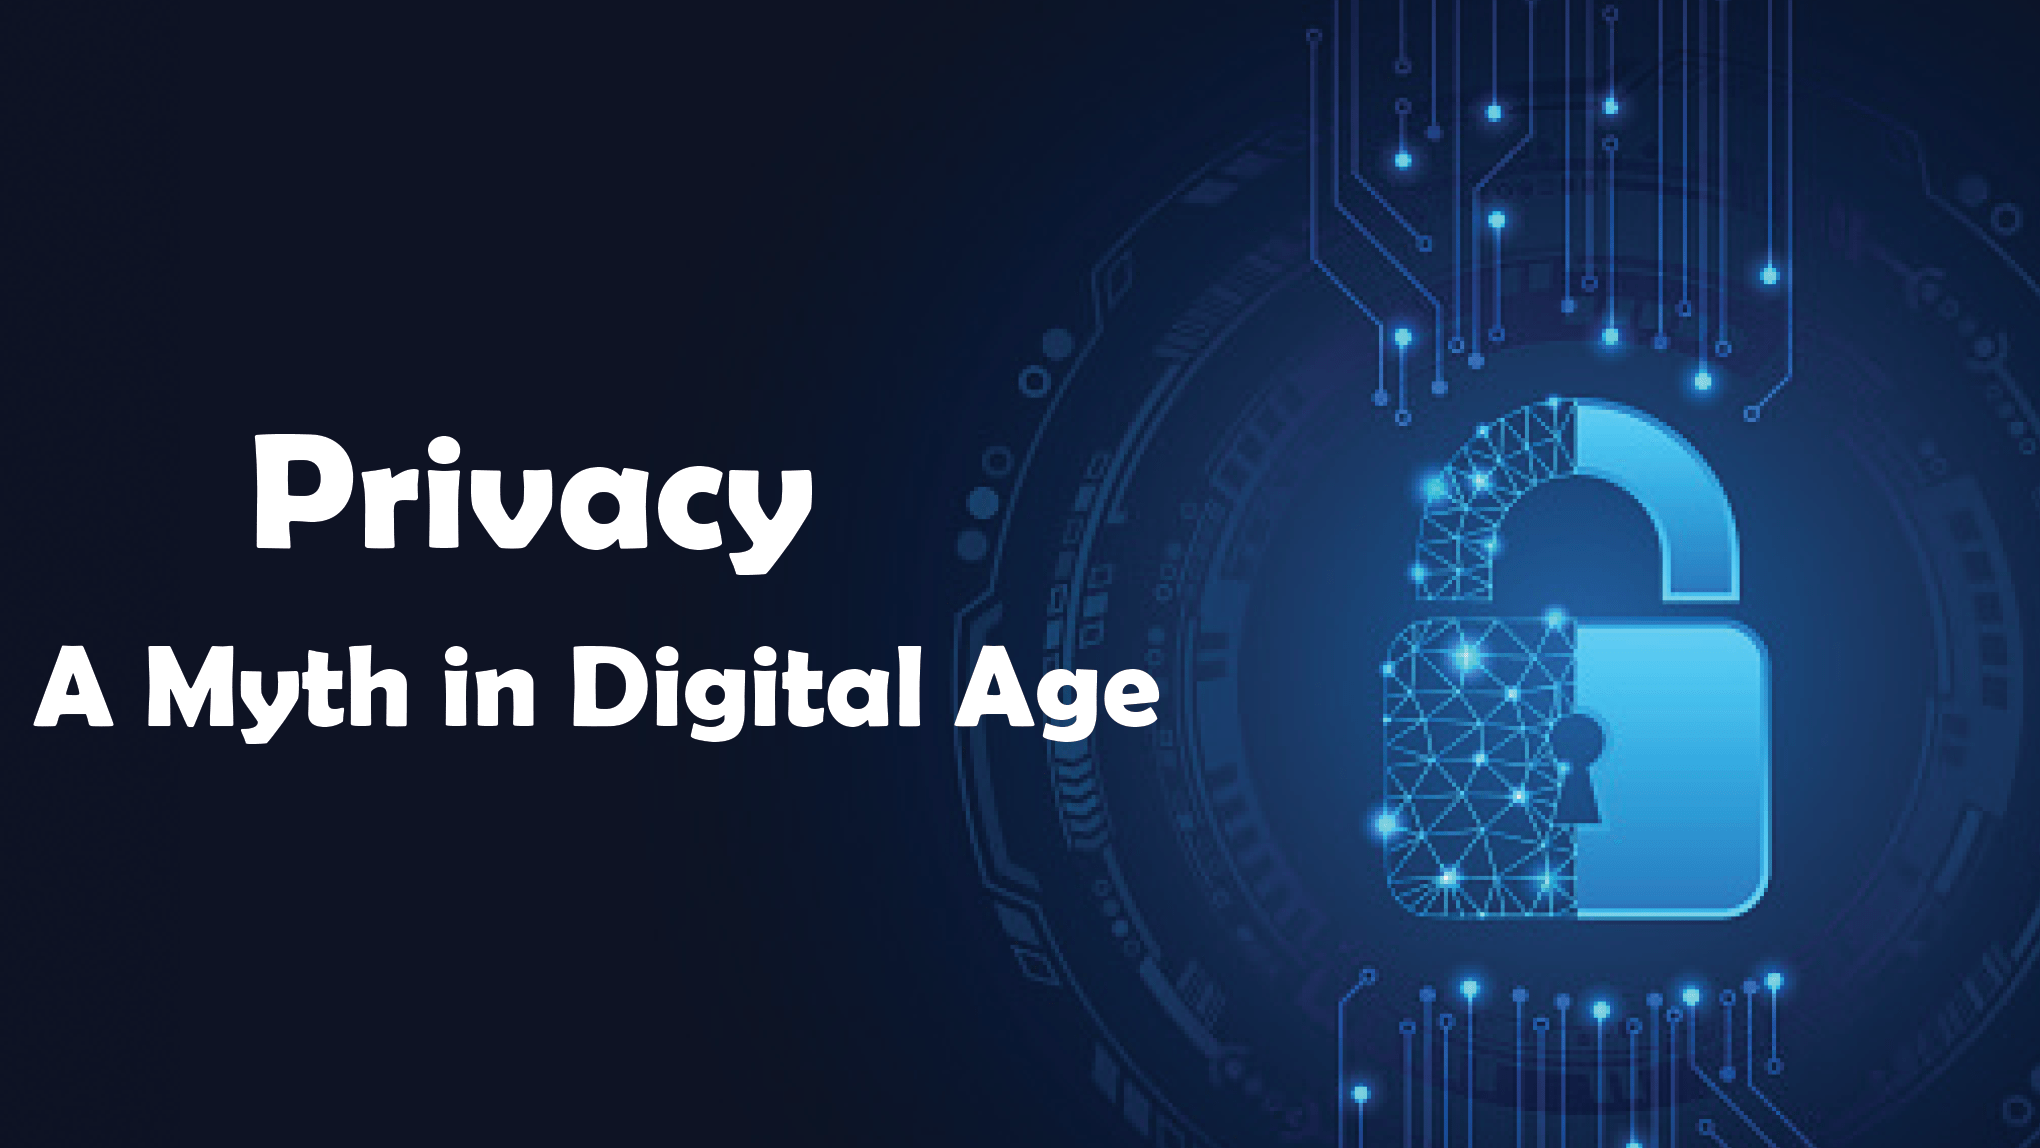 Privacy- A Myth in Digital Age